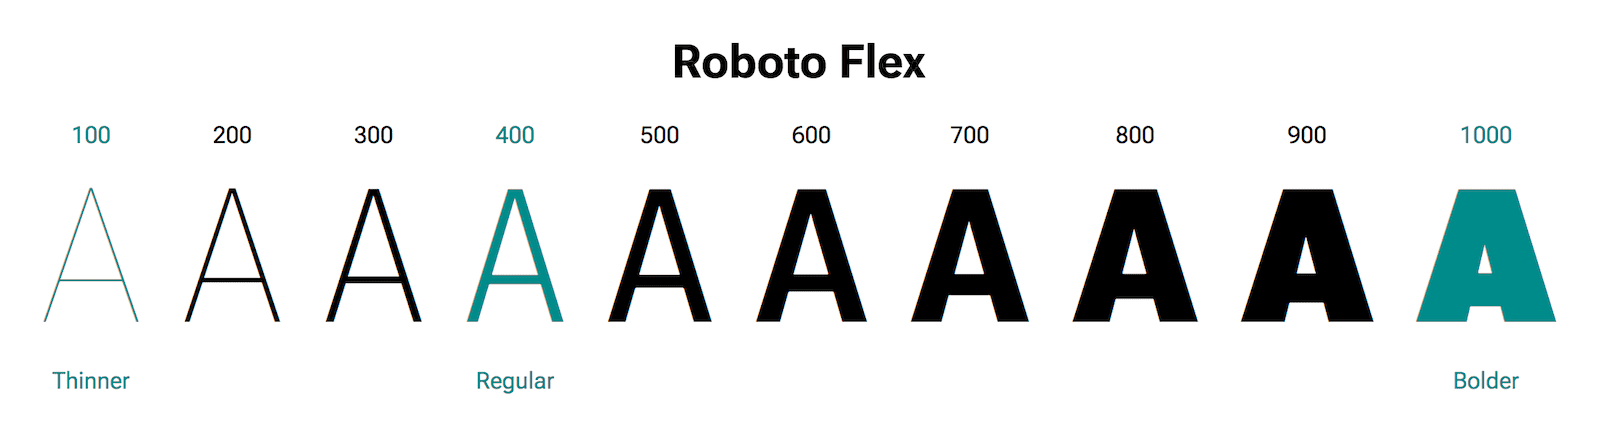 حرف A در وزن های مختلف نشان داده شده است